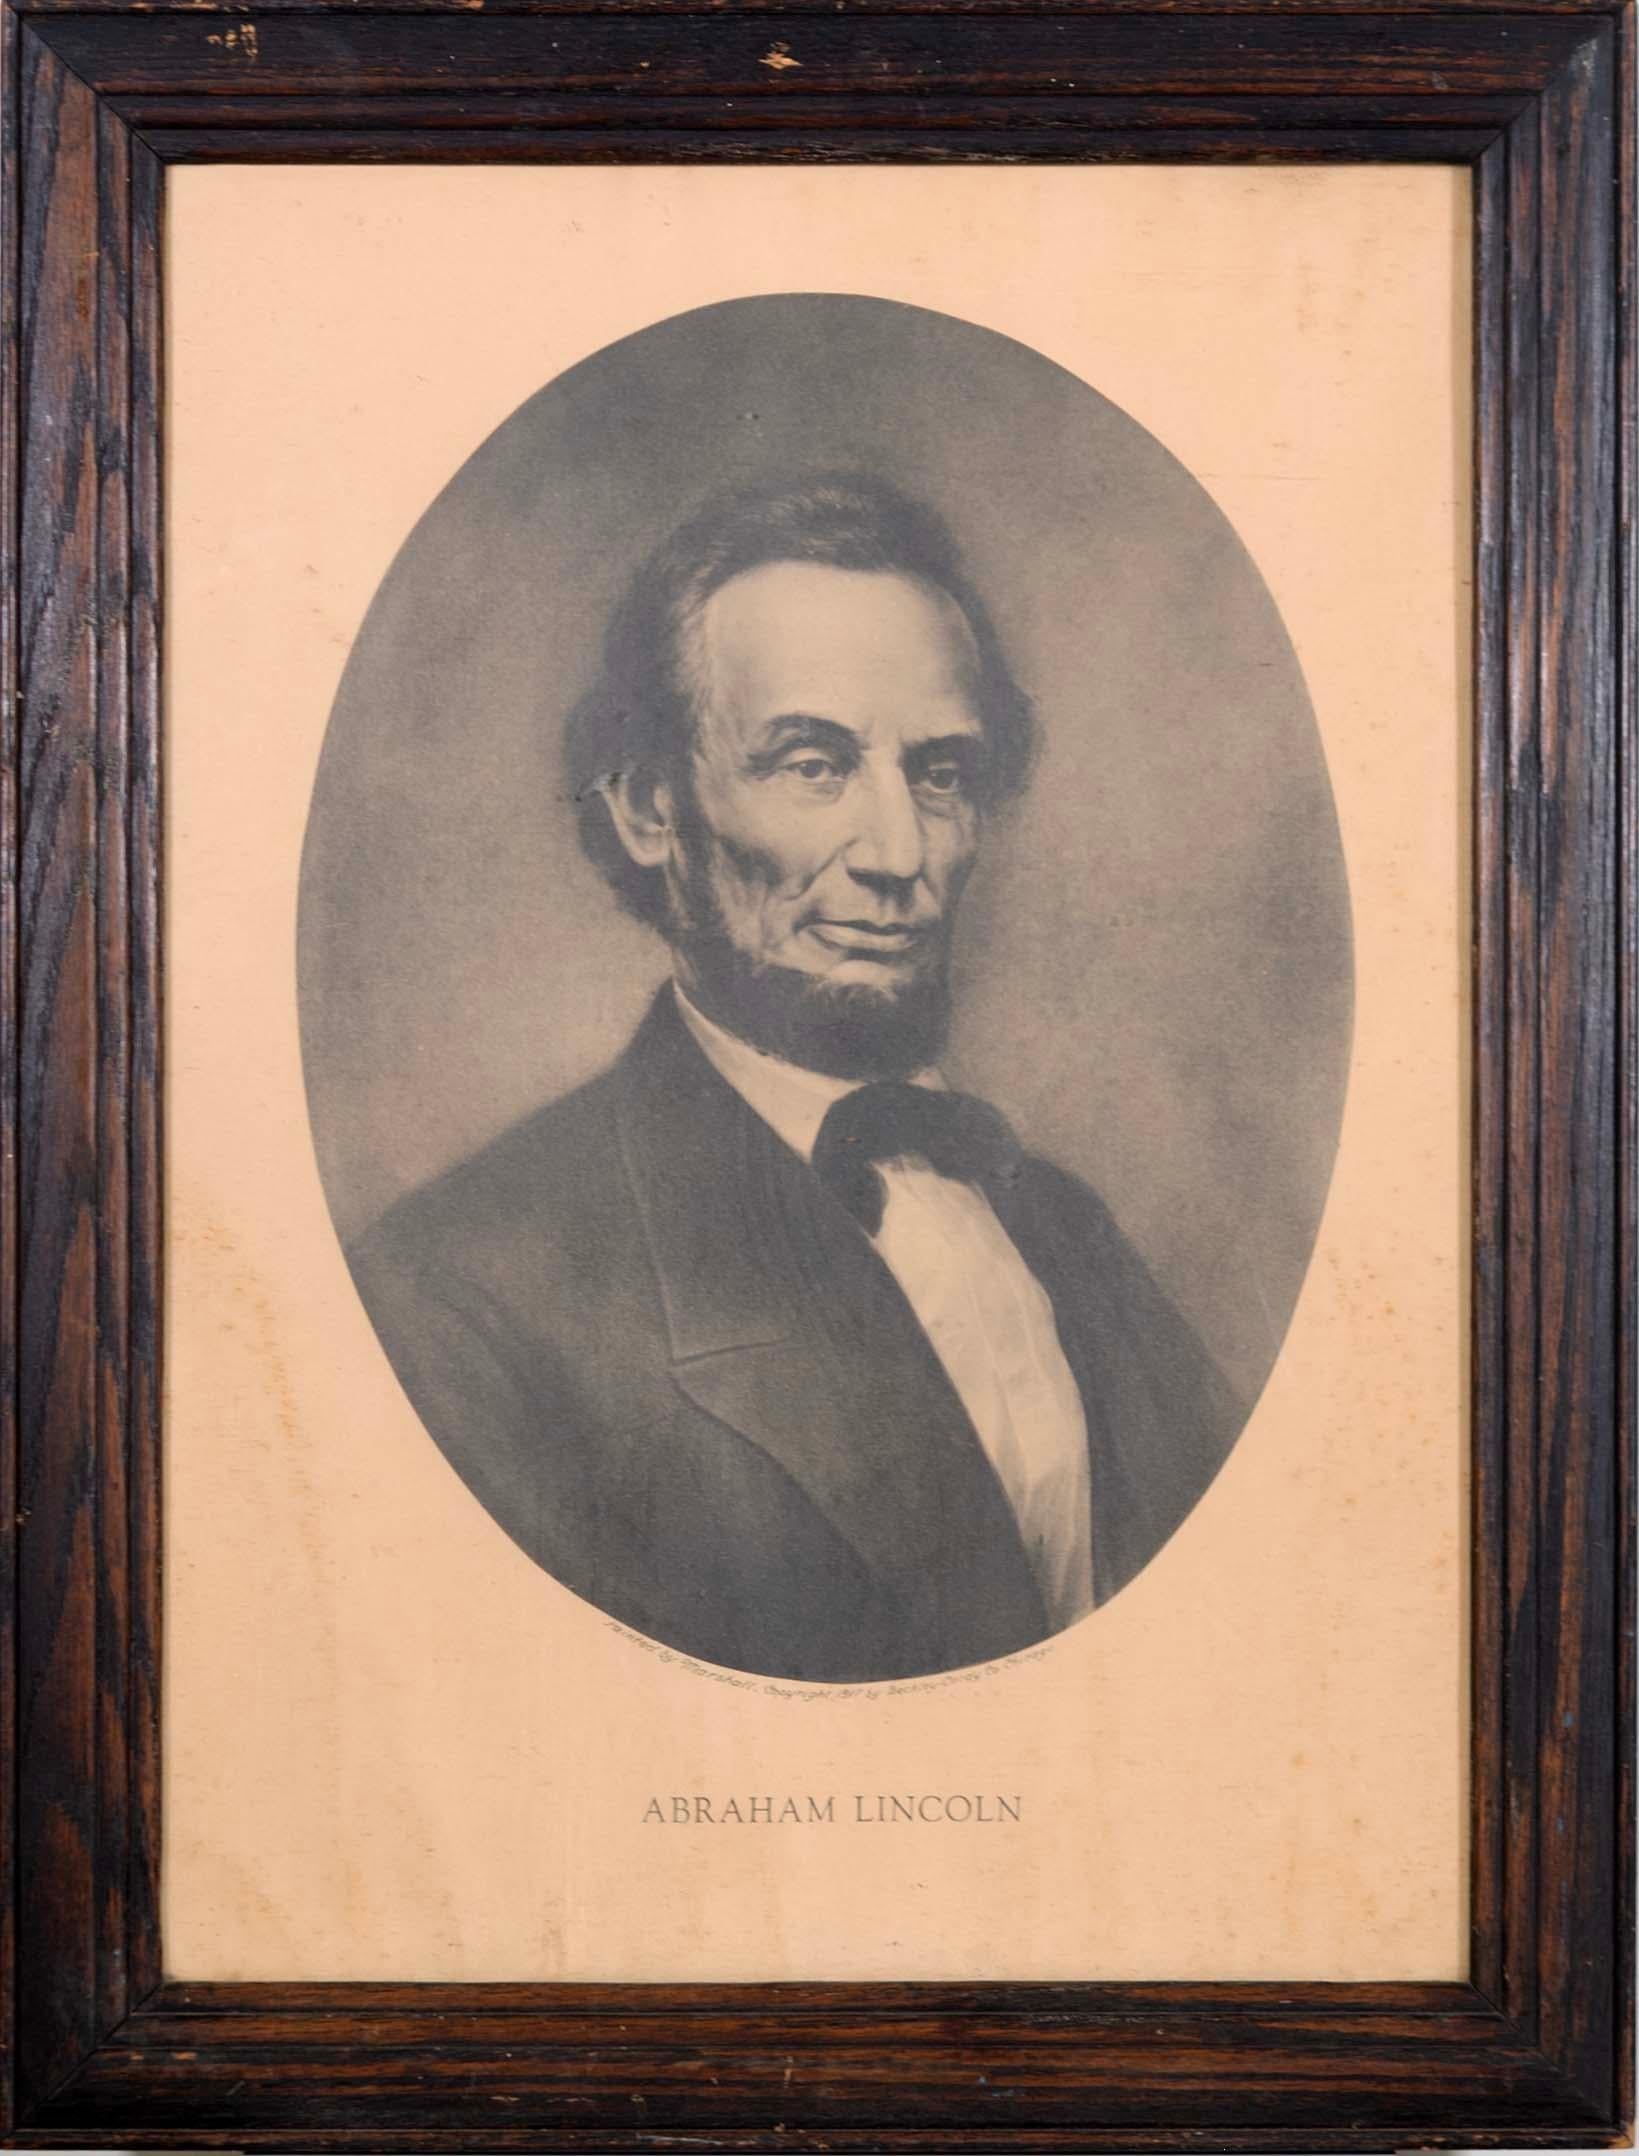 Antikes lithografisches Porträt eines Stichs von Abraham Lincoln von William Edgar Marshall (nach). Gedruckt im Jahr 1917, Chicago: Berkley-Cardy Co. Dieser Stich wurde als das beste Porträt gepriesen, das je von Abraham Lincoln angefertigt wurde.